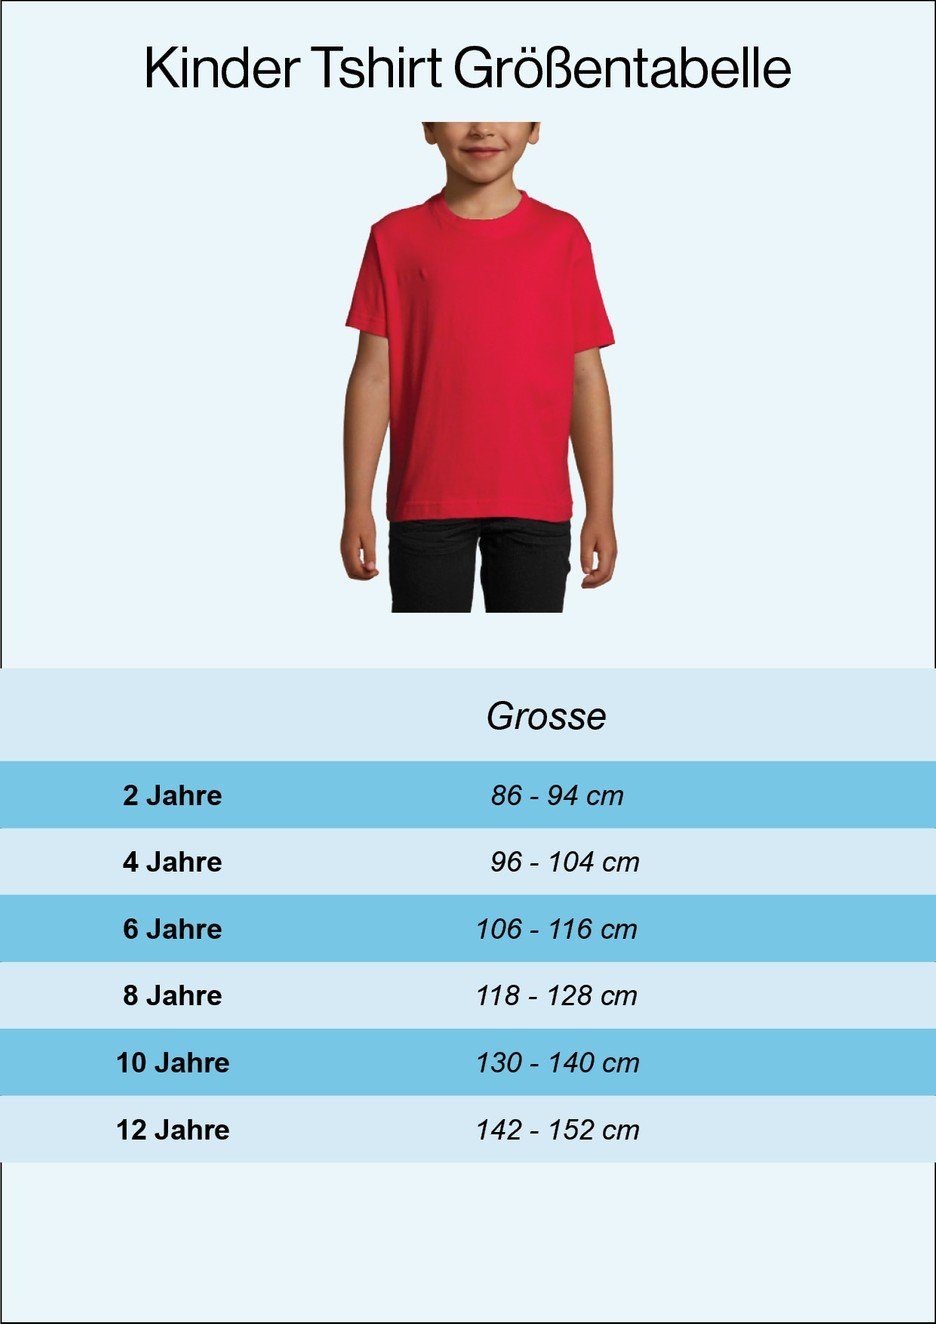 Kinder Kids (Gr. 92 -146) Youth Designz T-Shirt Belgien Kinder T-Shirt im Fußball Trikot Look mit trendigem Motiv